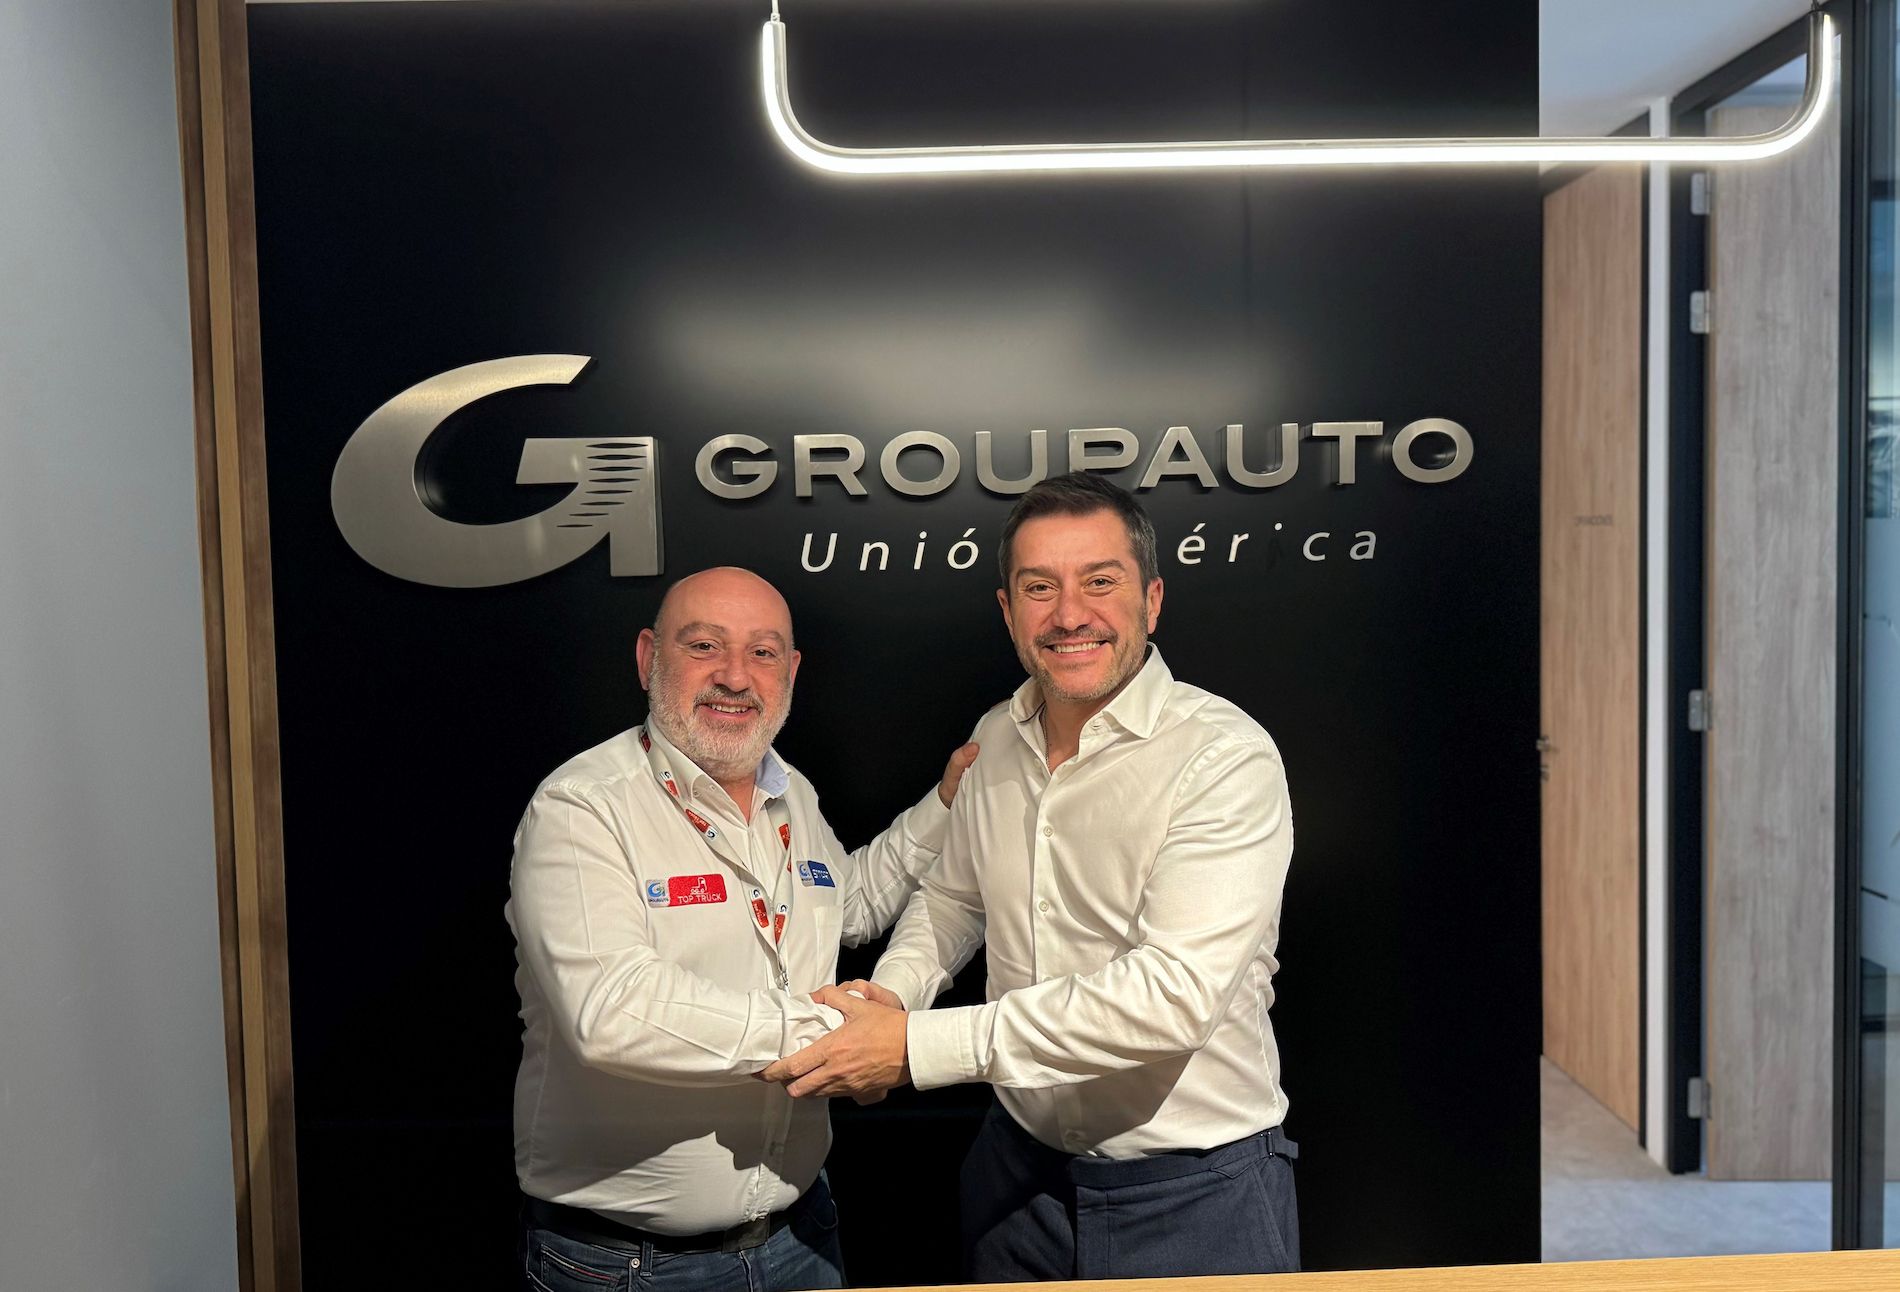 El acuerdo de colaboración ha sido suscrito por José Moreno, director de Vehículo Industrial de GAUIb, y Daniel Monedero, director general del fabricante Auto Comercial Monedero.